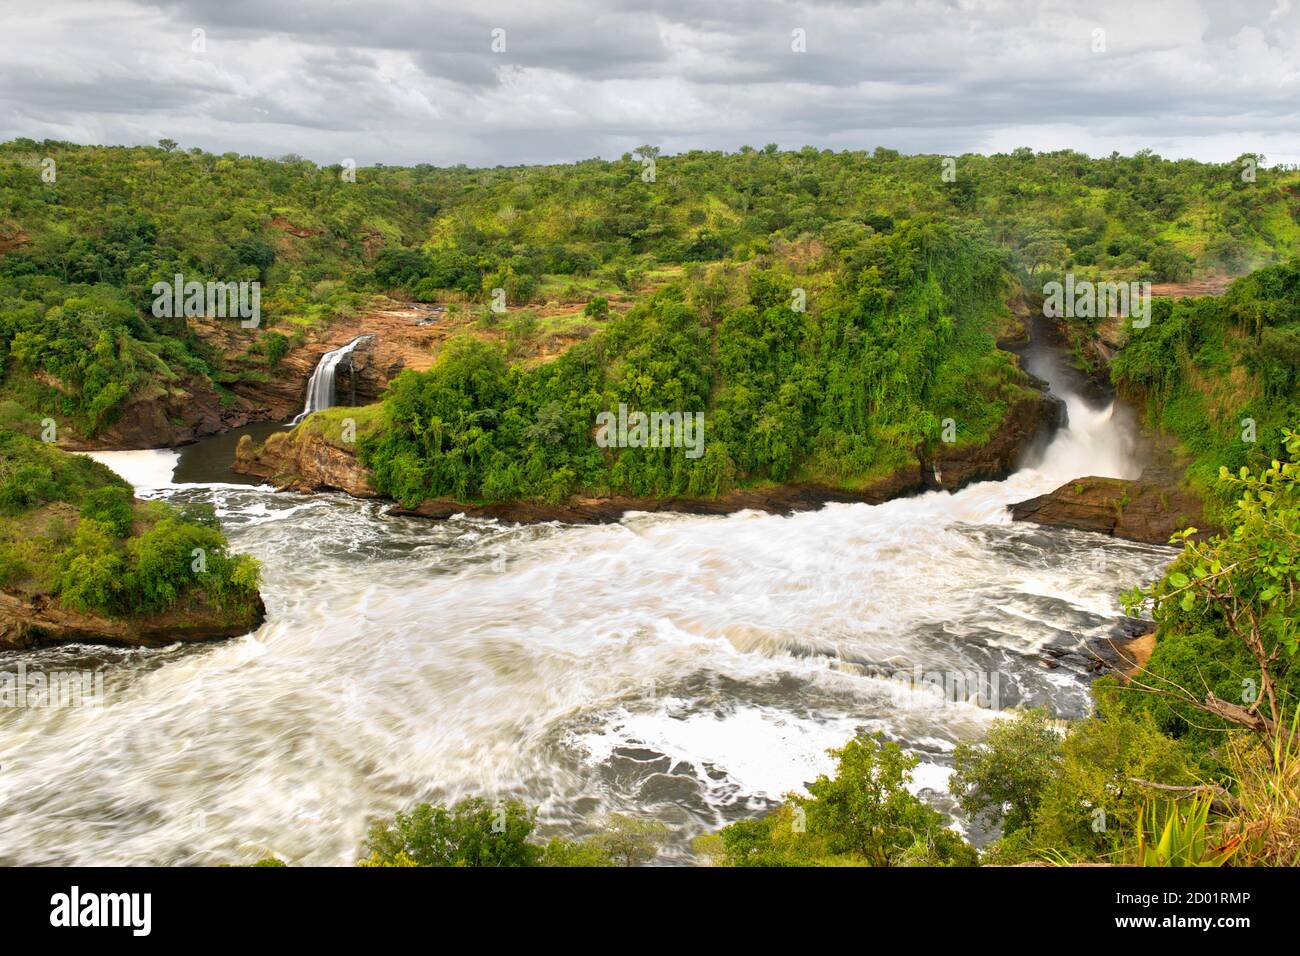 Vista de las cataratas Murchison en el río Victoria Nile en el Parque Nacional Murchison Falls en Uganda, África central. Foto de stock